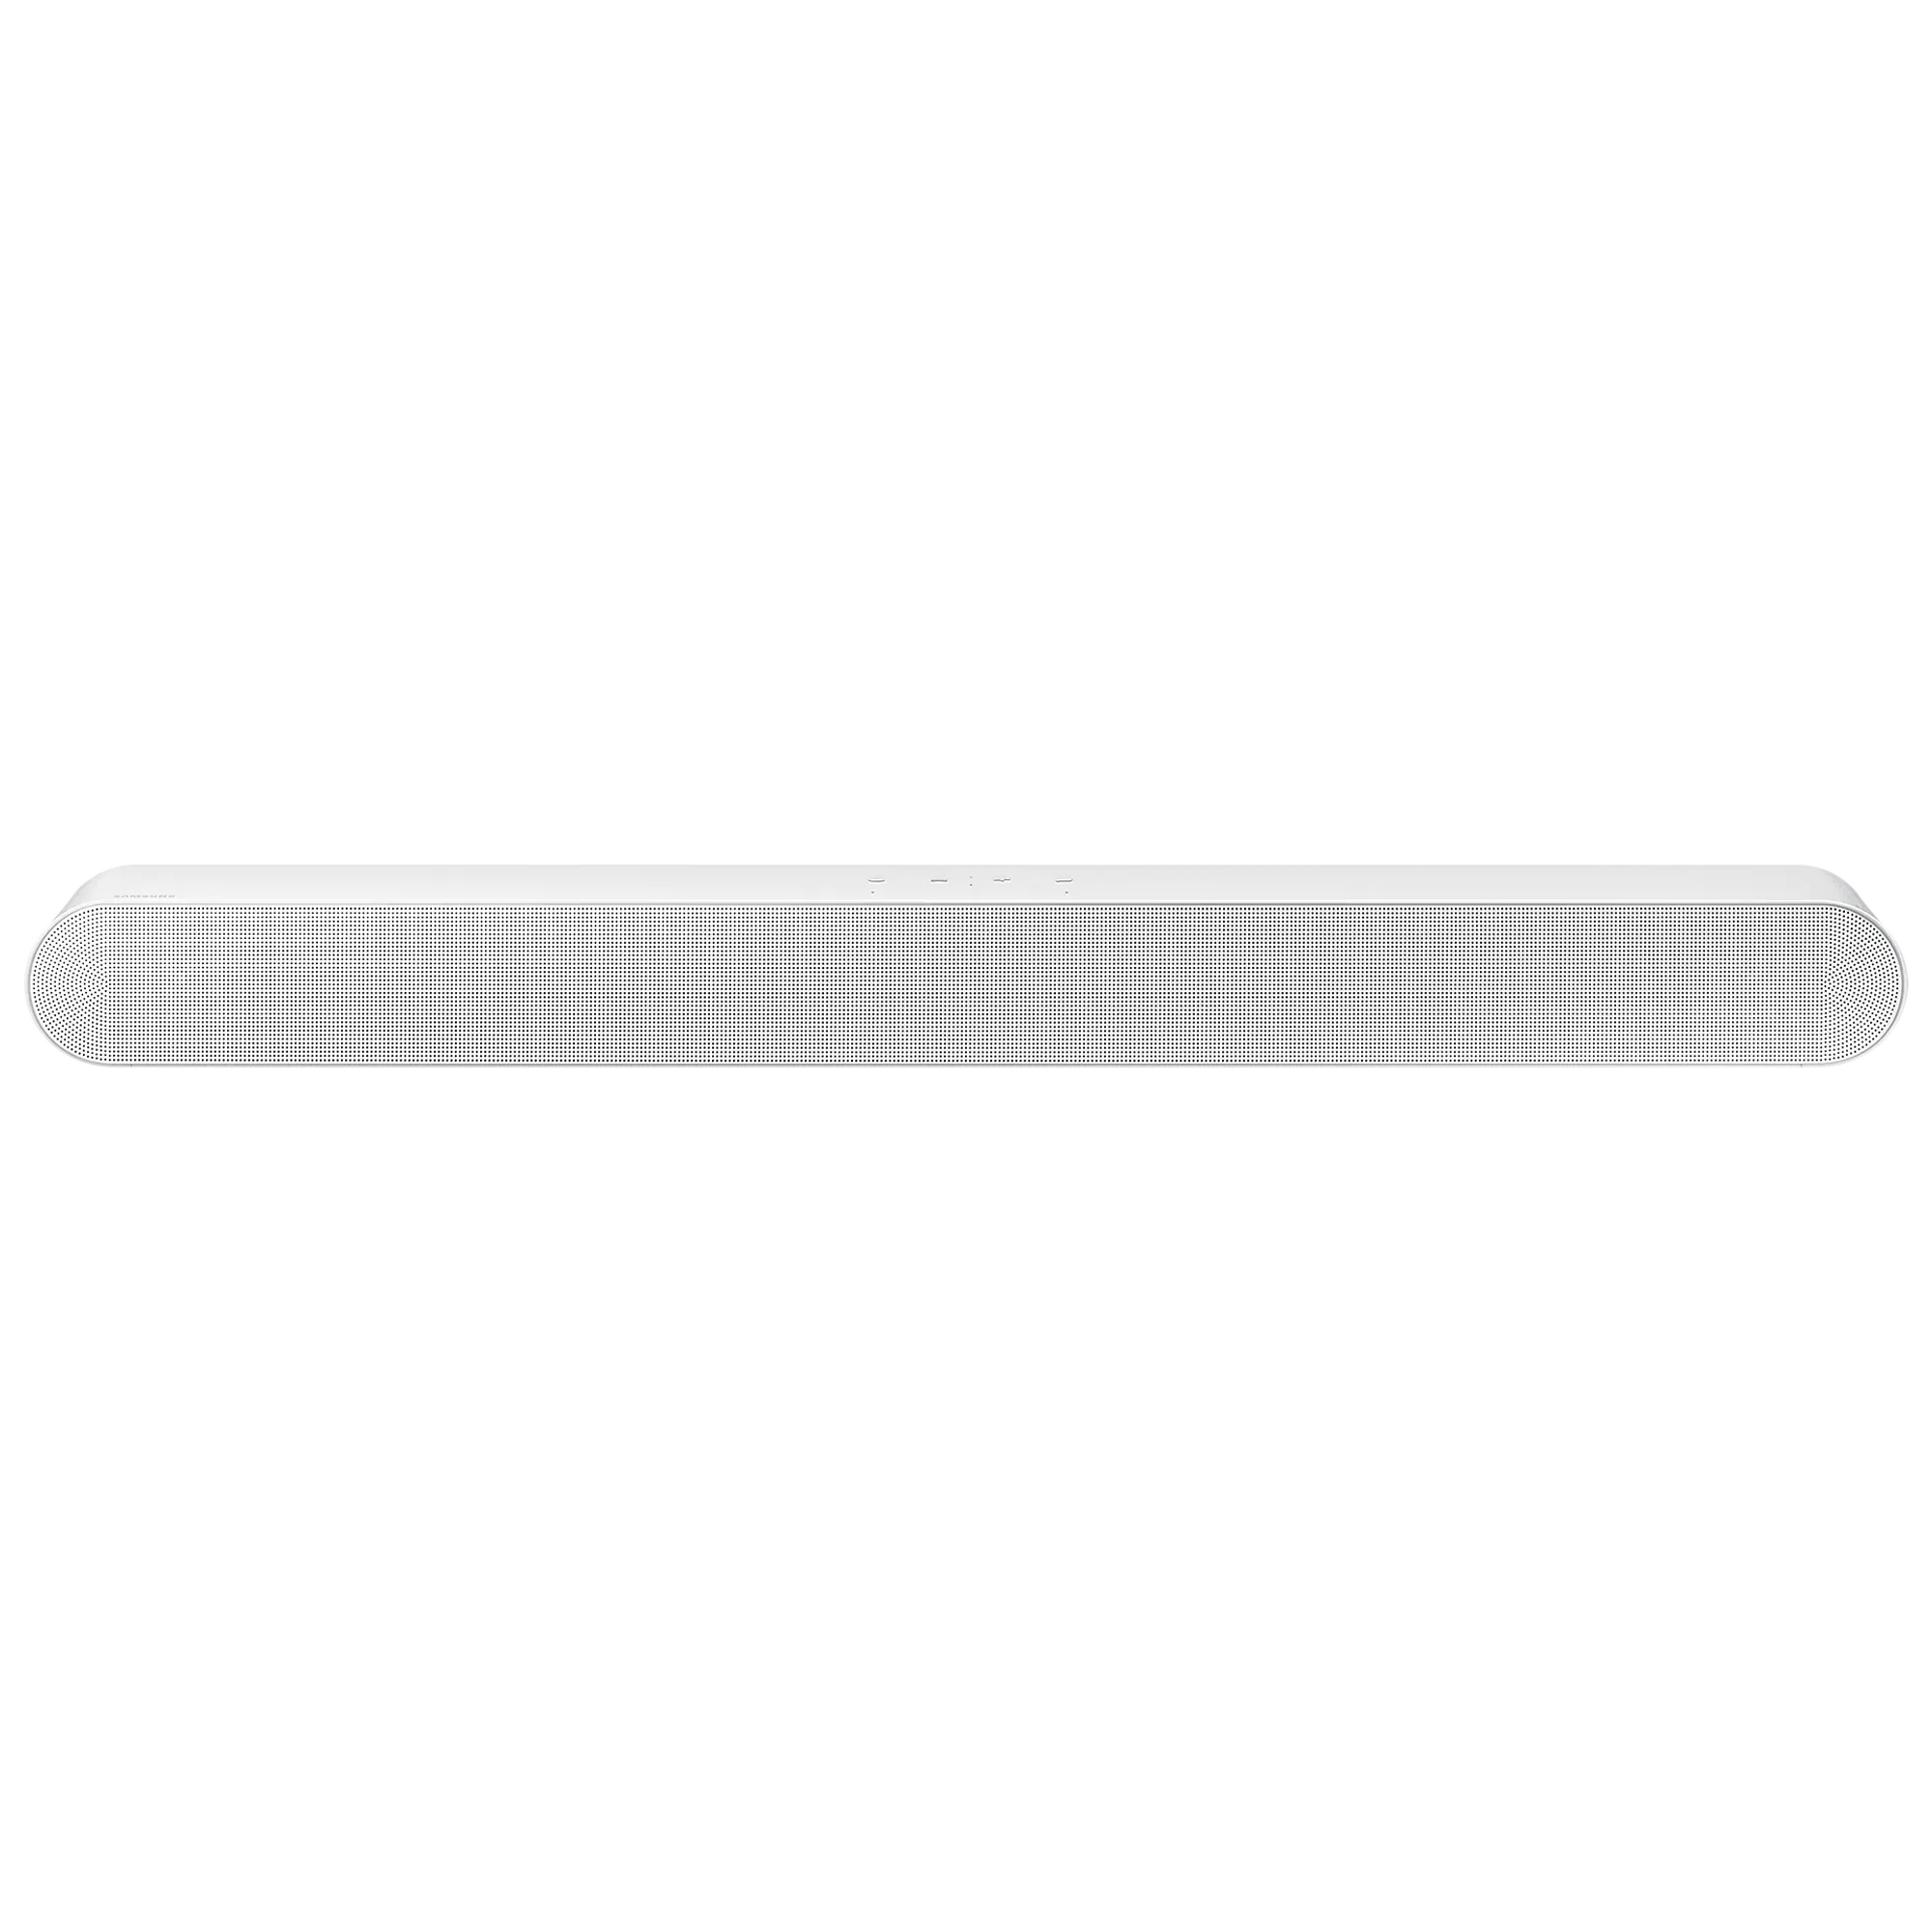 SAMSUNG 5.0 Channel 200 Watts Dolby Atmos Sound Bar (Built-in Alexa, HW-S61B/XL, Black)_1